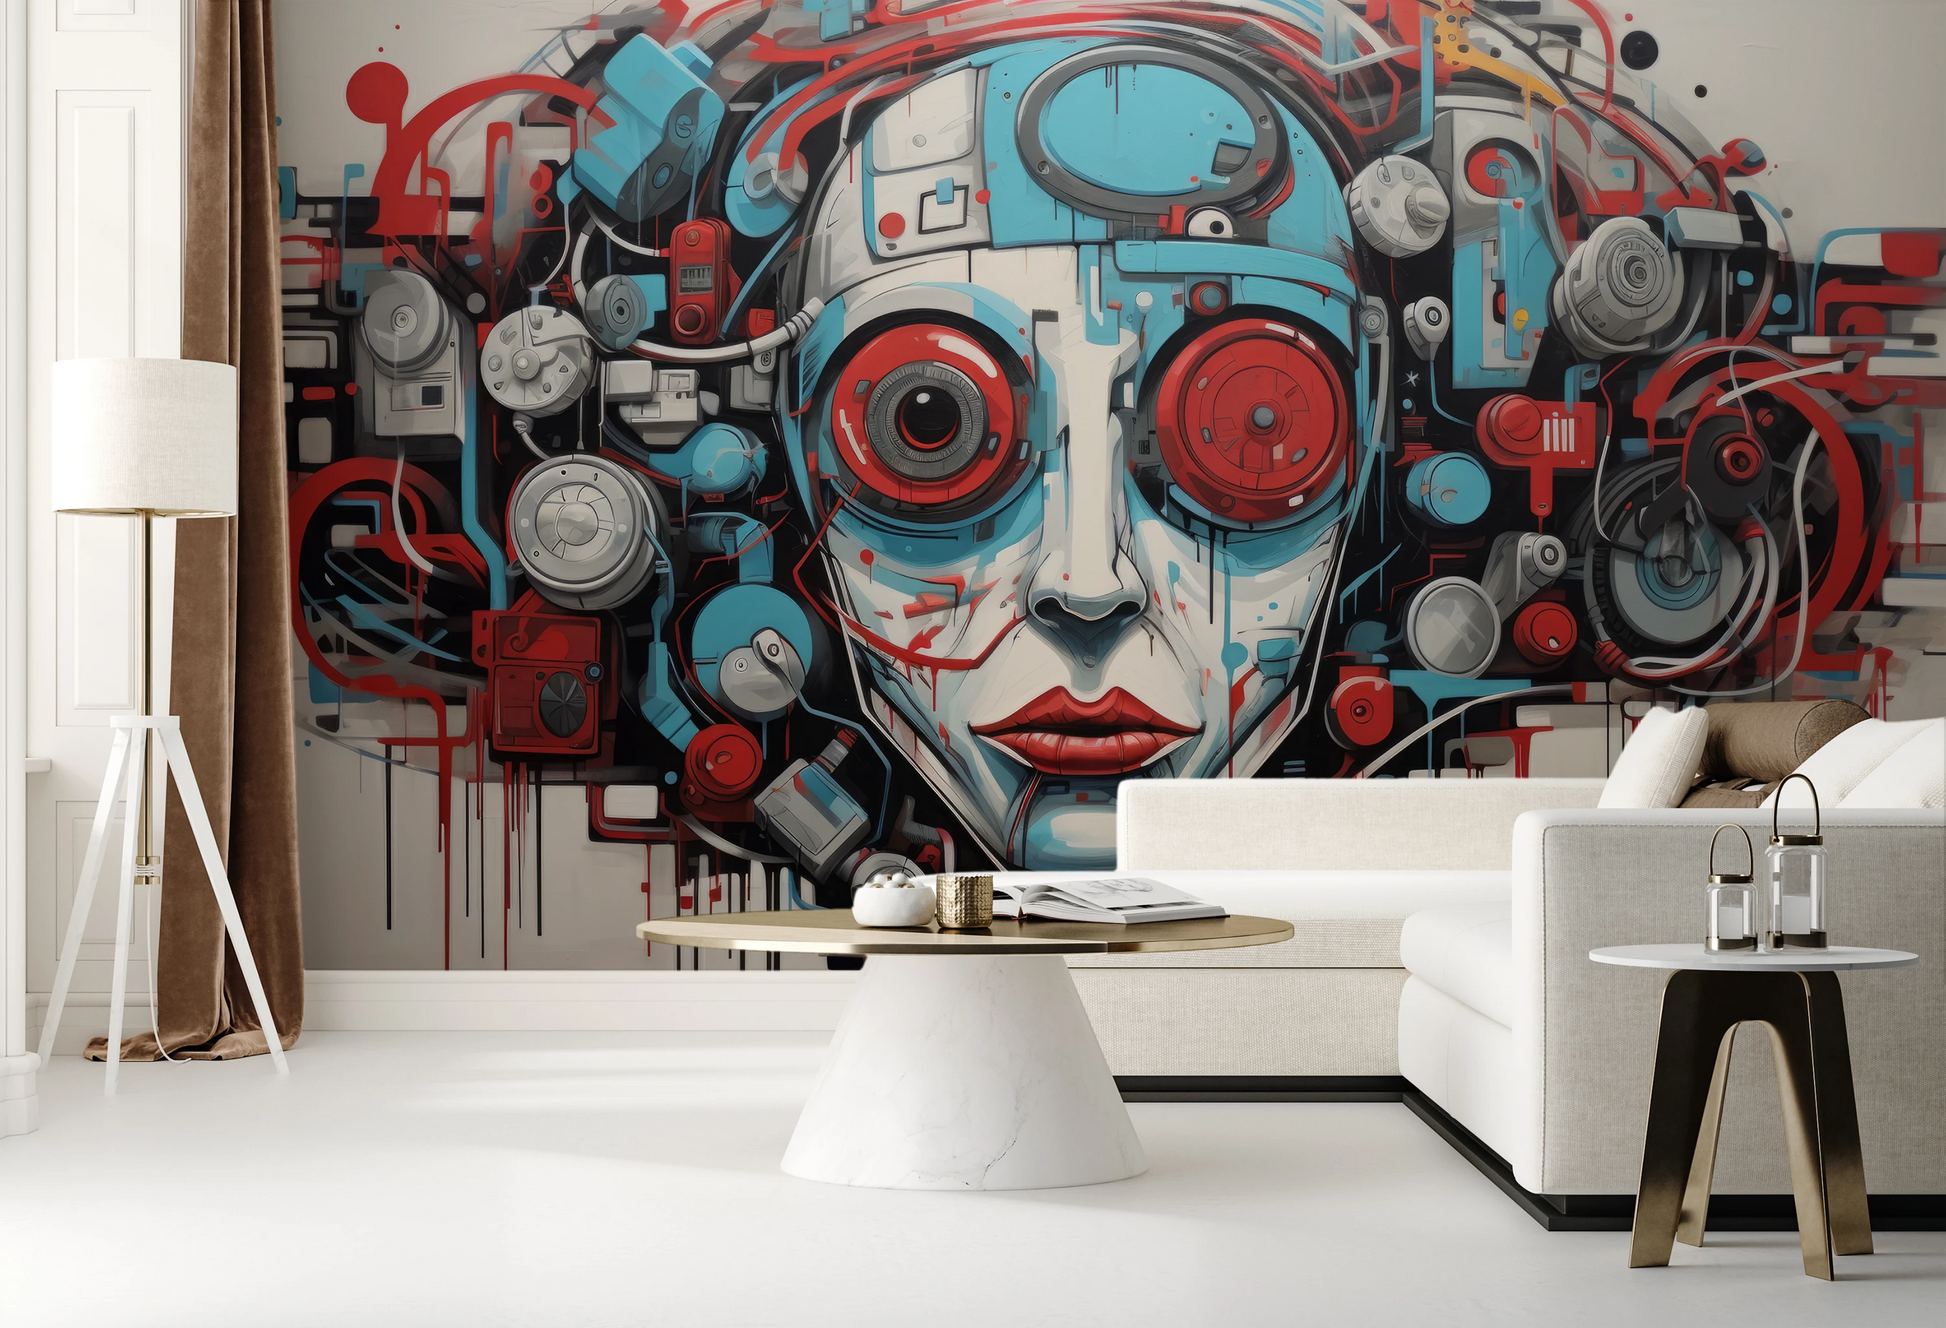 Fototapeta malowana o nazwie Cybernetic Vision pokazana w aranżacji wnętrza.